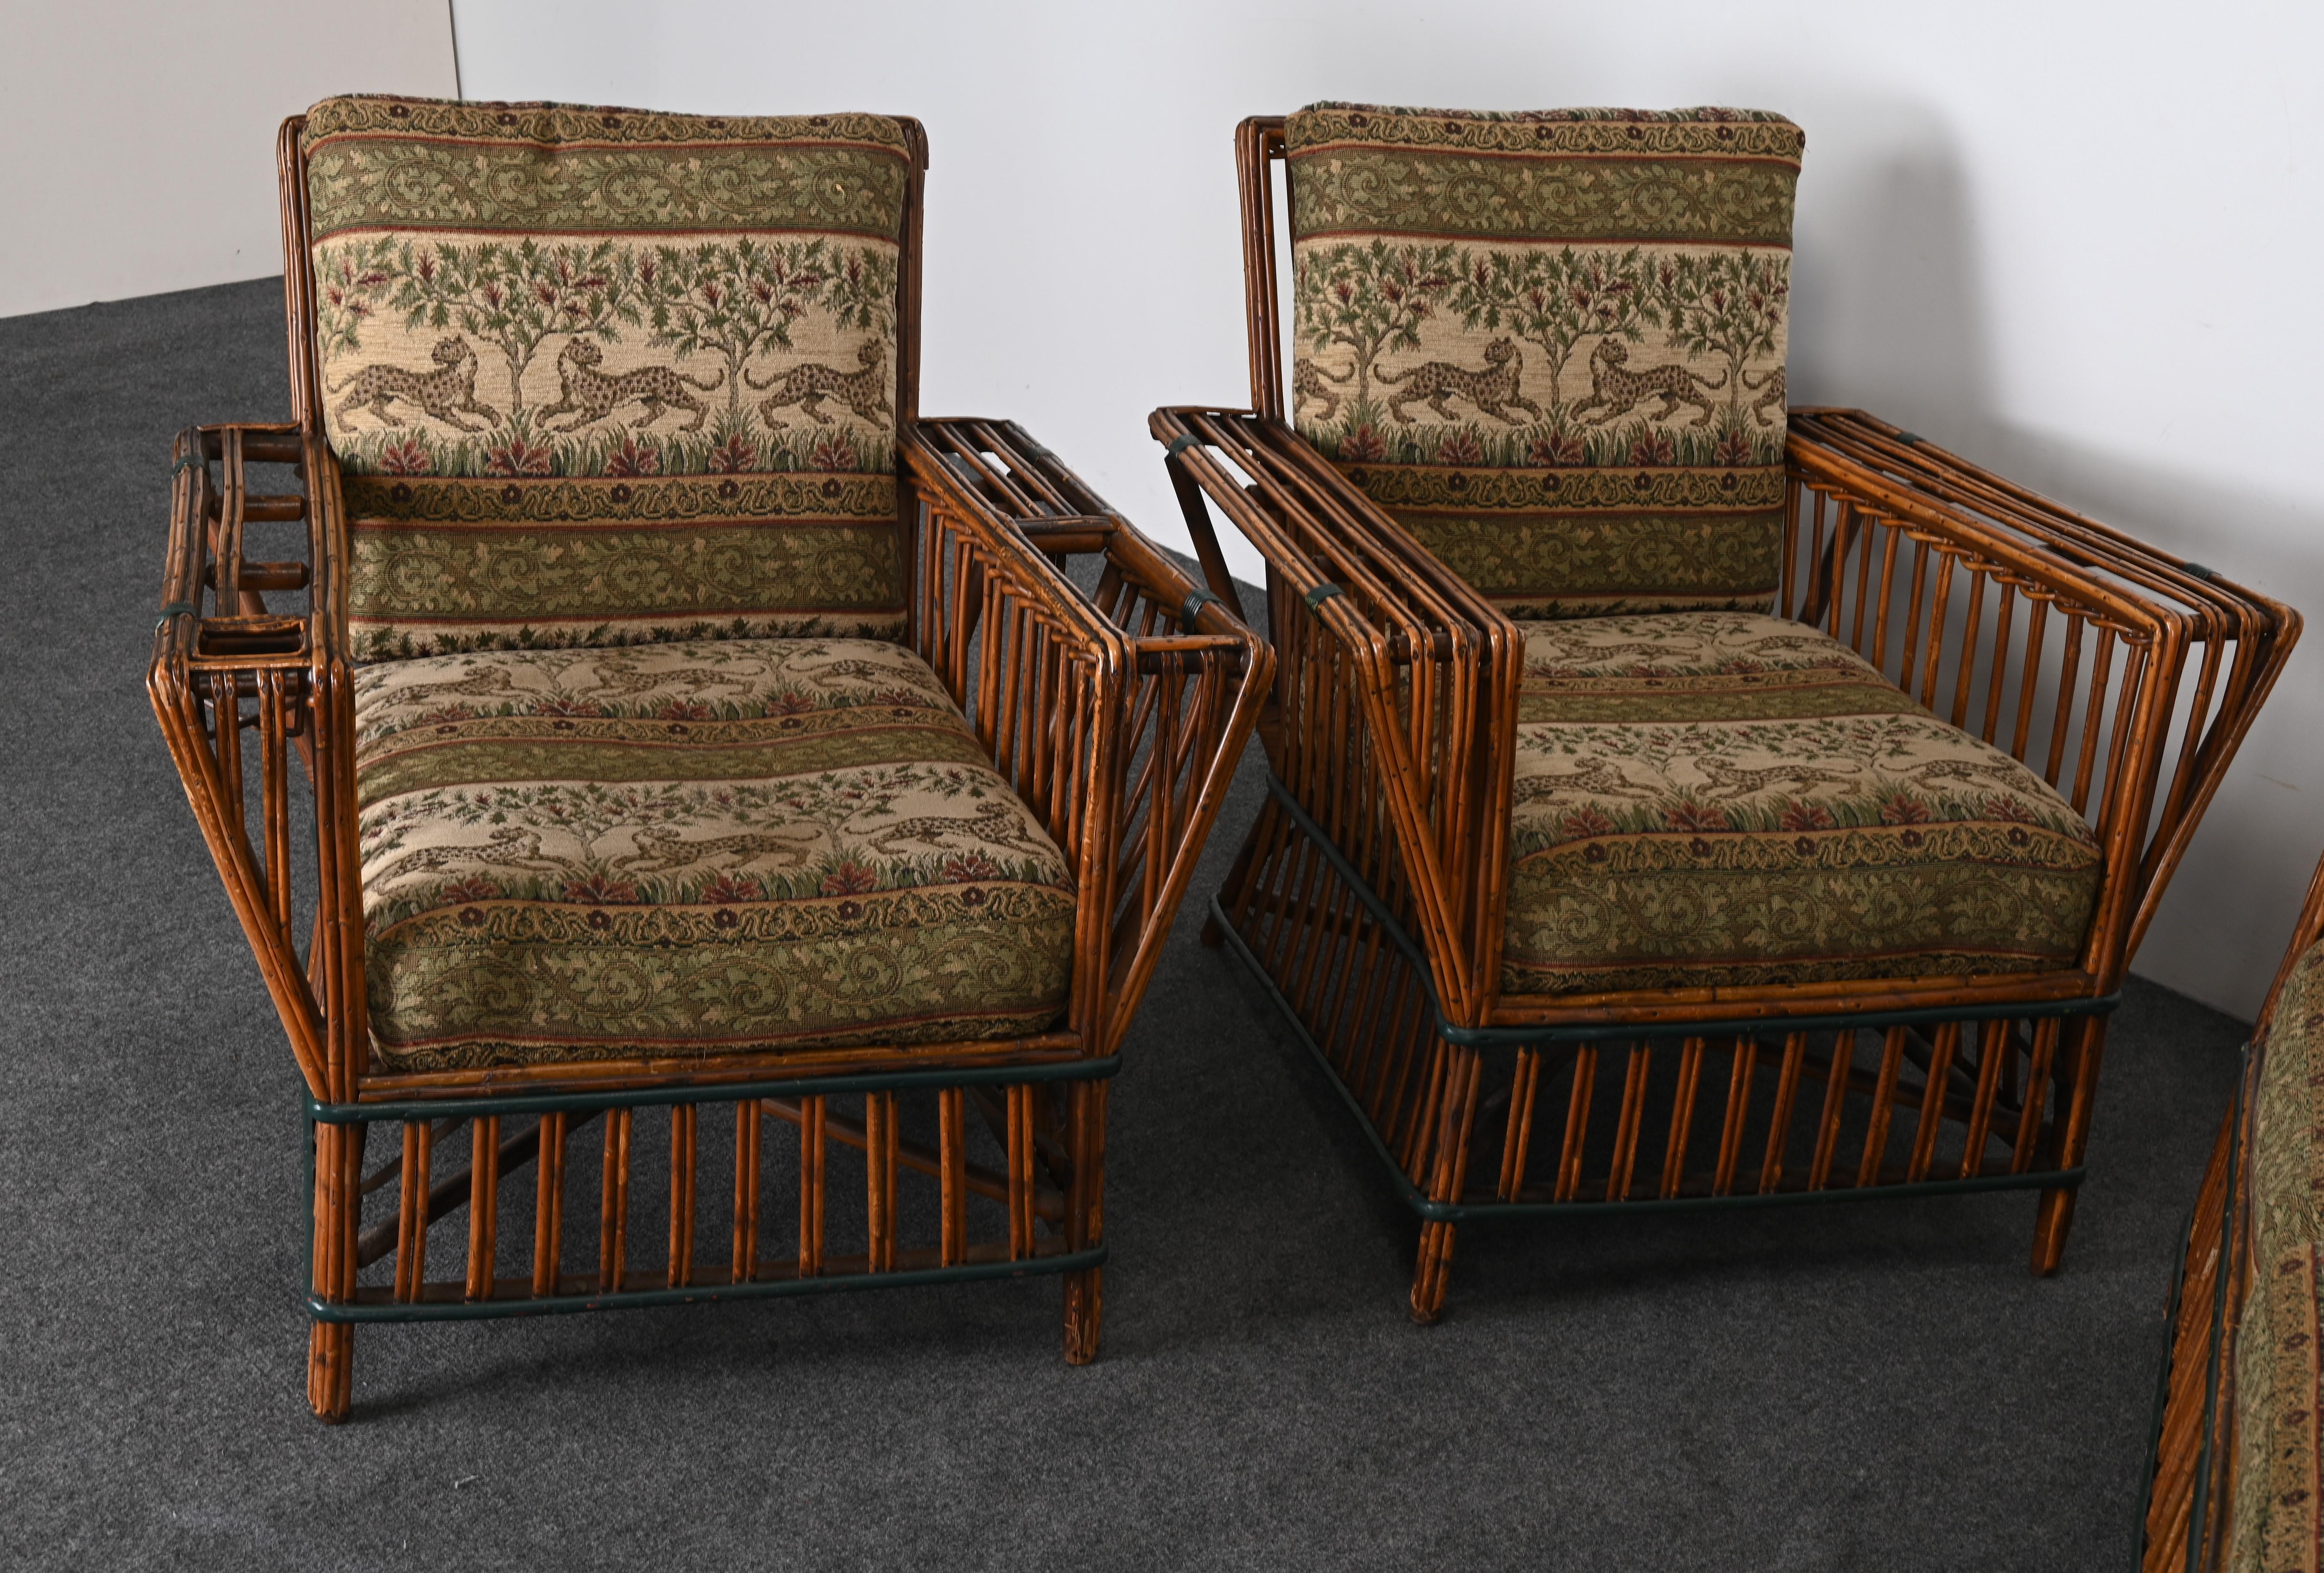 Ein hübsches Art-Déco-Sofa aus geteiltem Schilfrohr mit einem Paar Sesseln und Originalkissen mit leopardengeschmücktem Vintage-Stoff. Vielleicht möchten Sie neu polstern. Manche Leute nennen dies Split Reed Ypsilanti Stick Wicker. Das Set ist ein